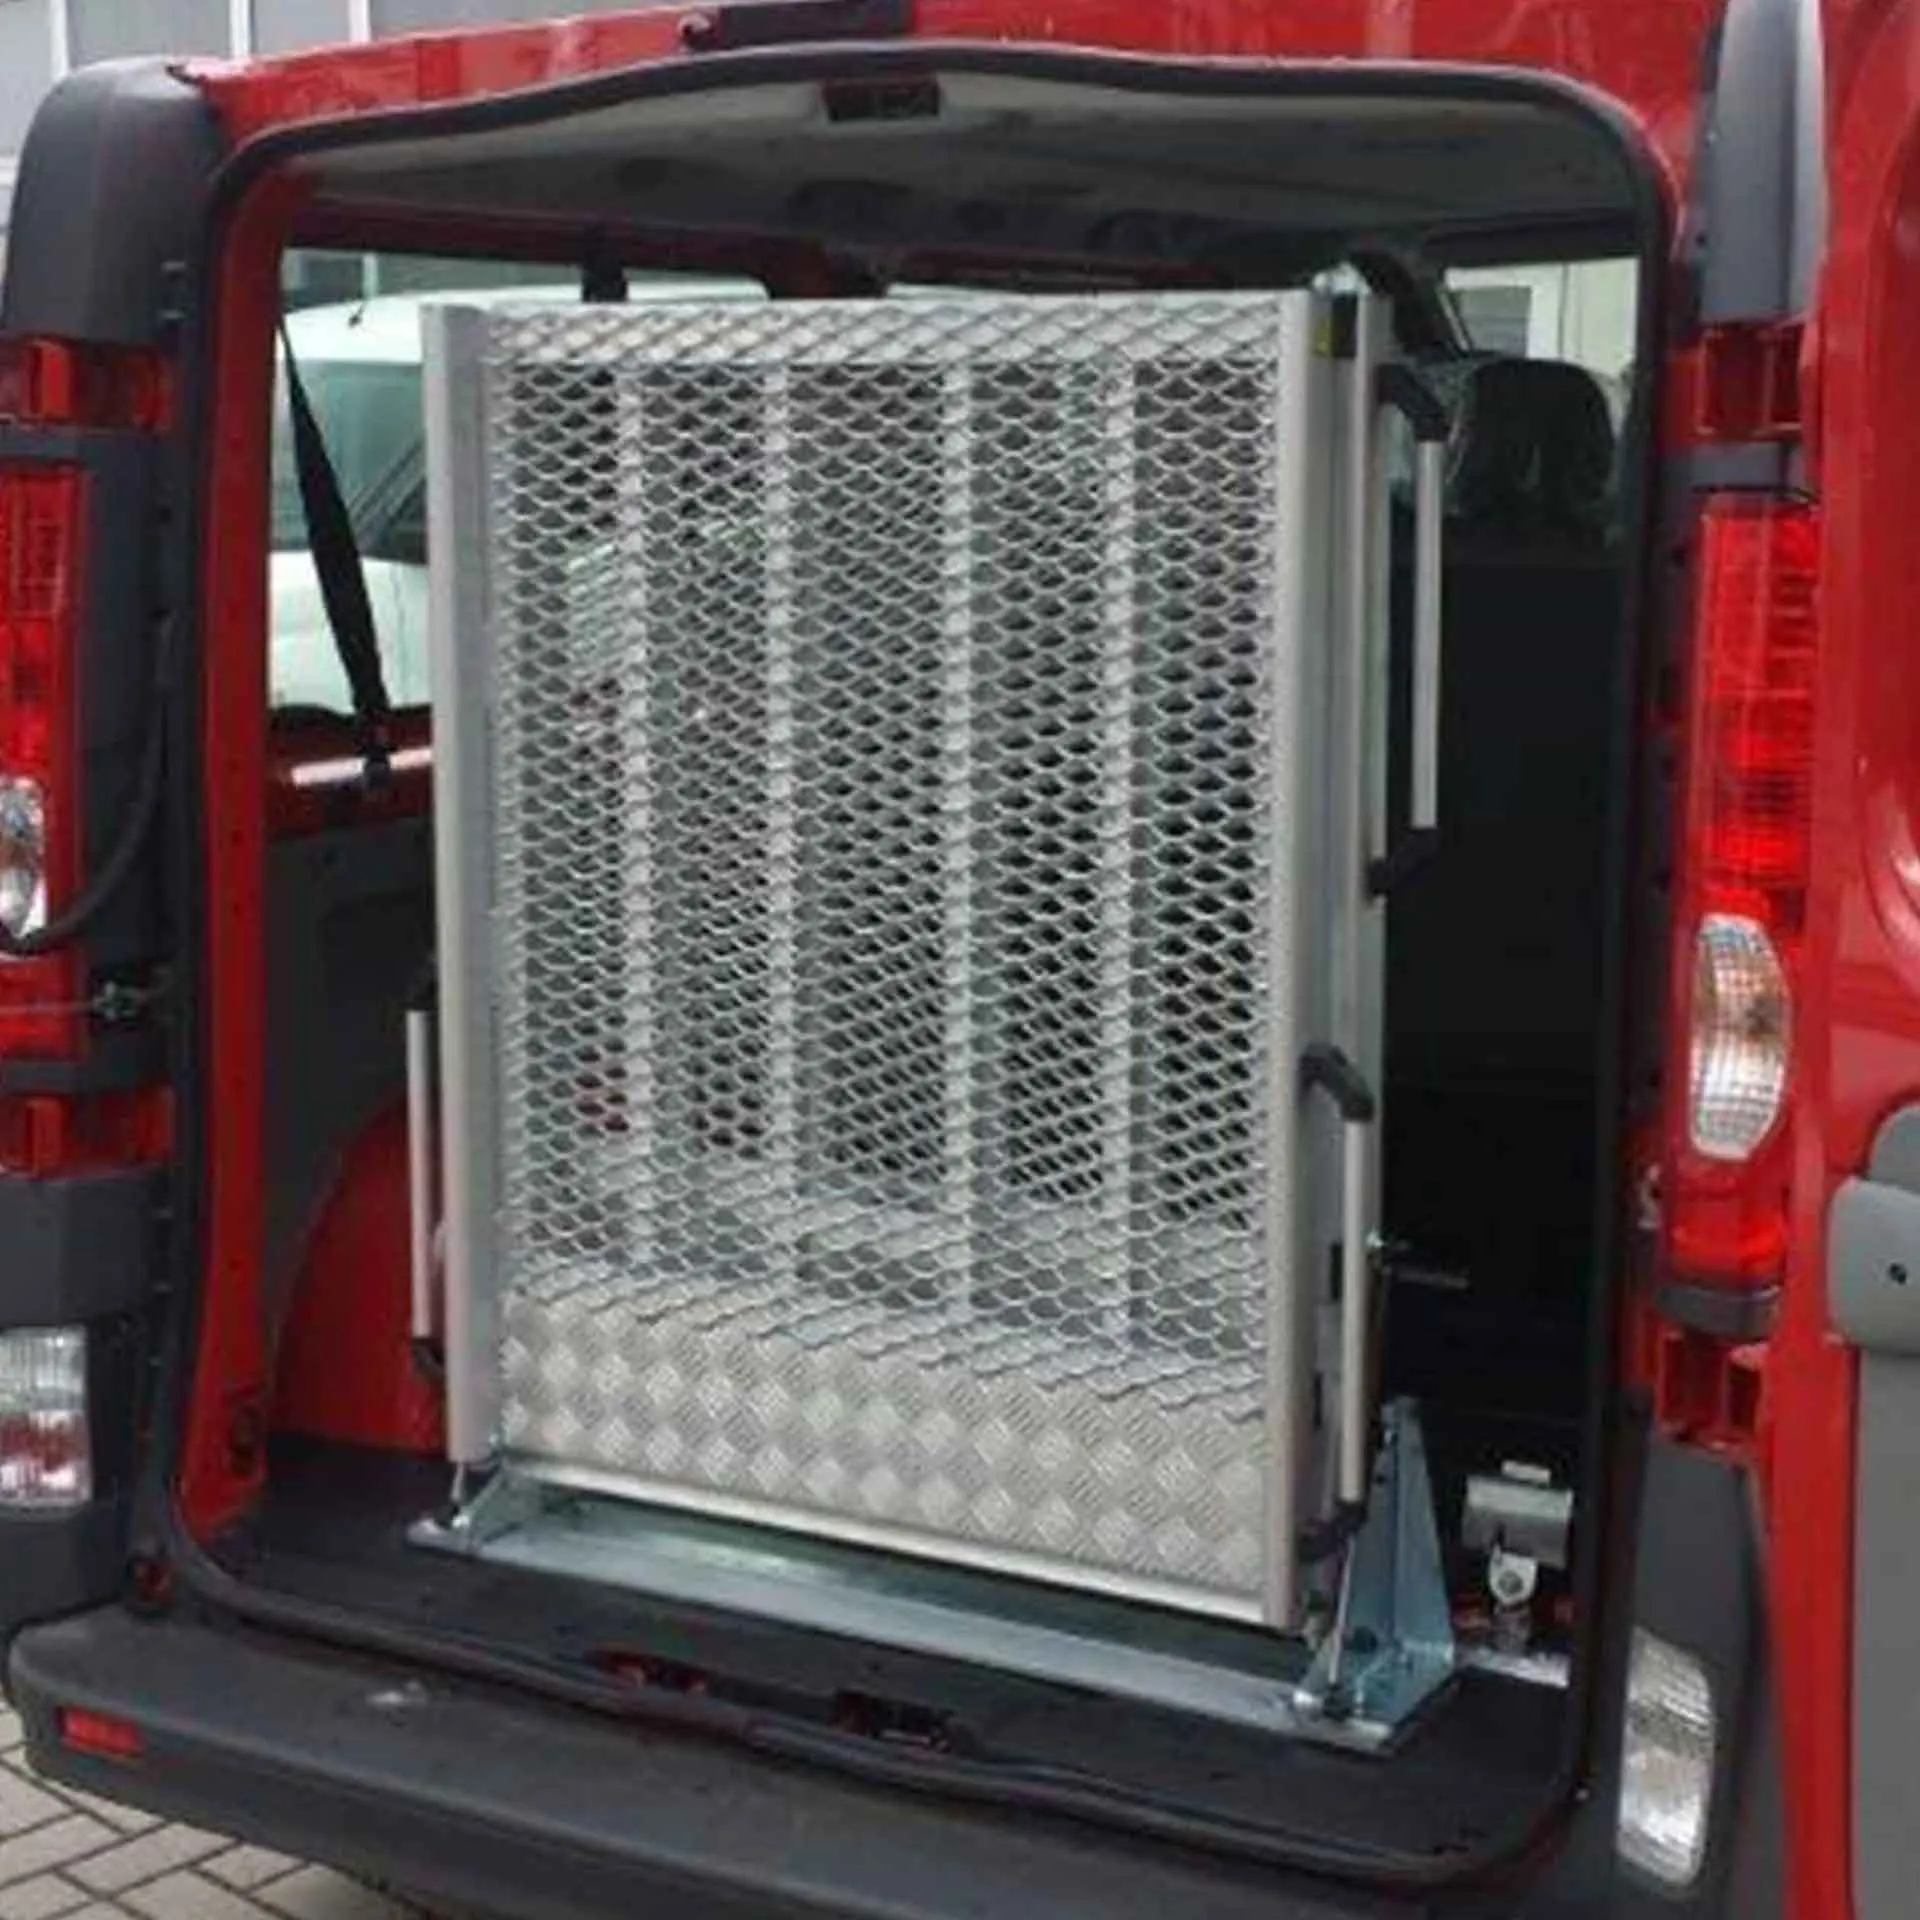 Serie EASY | Fest montierte Rollstuhlrampe für Kleinbusse - Abmessung 2.200 x 850 mm, 3-fach faltbar